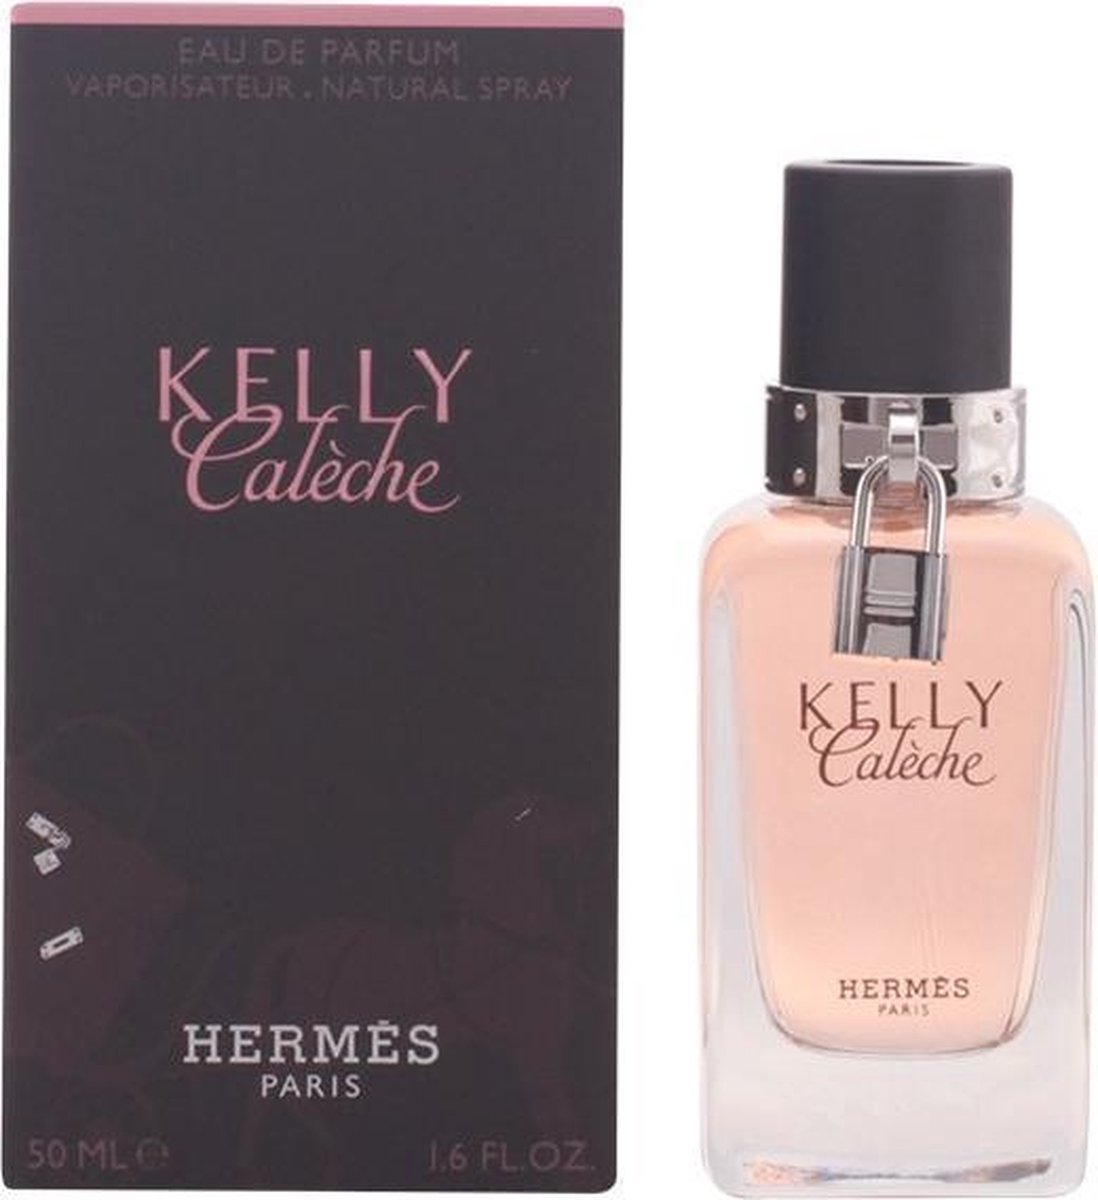 Hermes Kelly Caleche Femmes 50 ml | bol.com